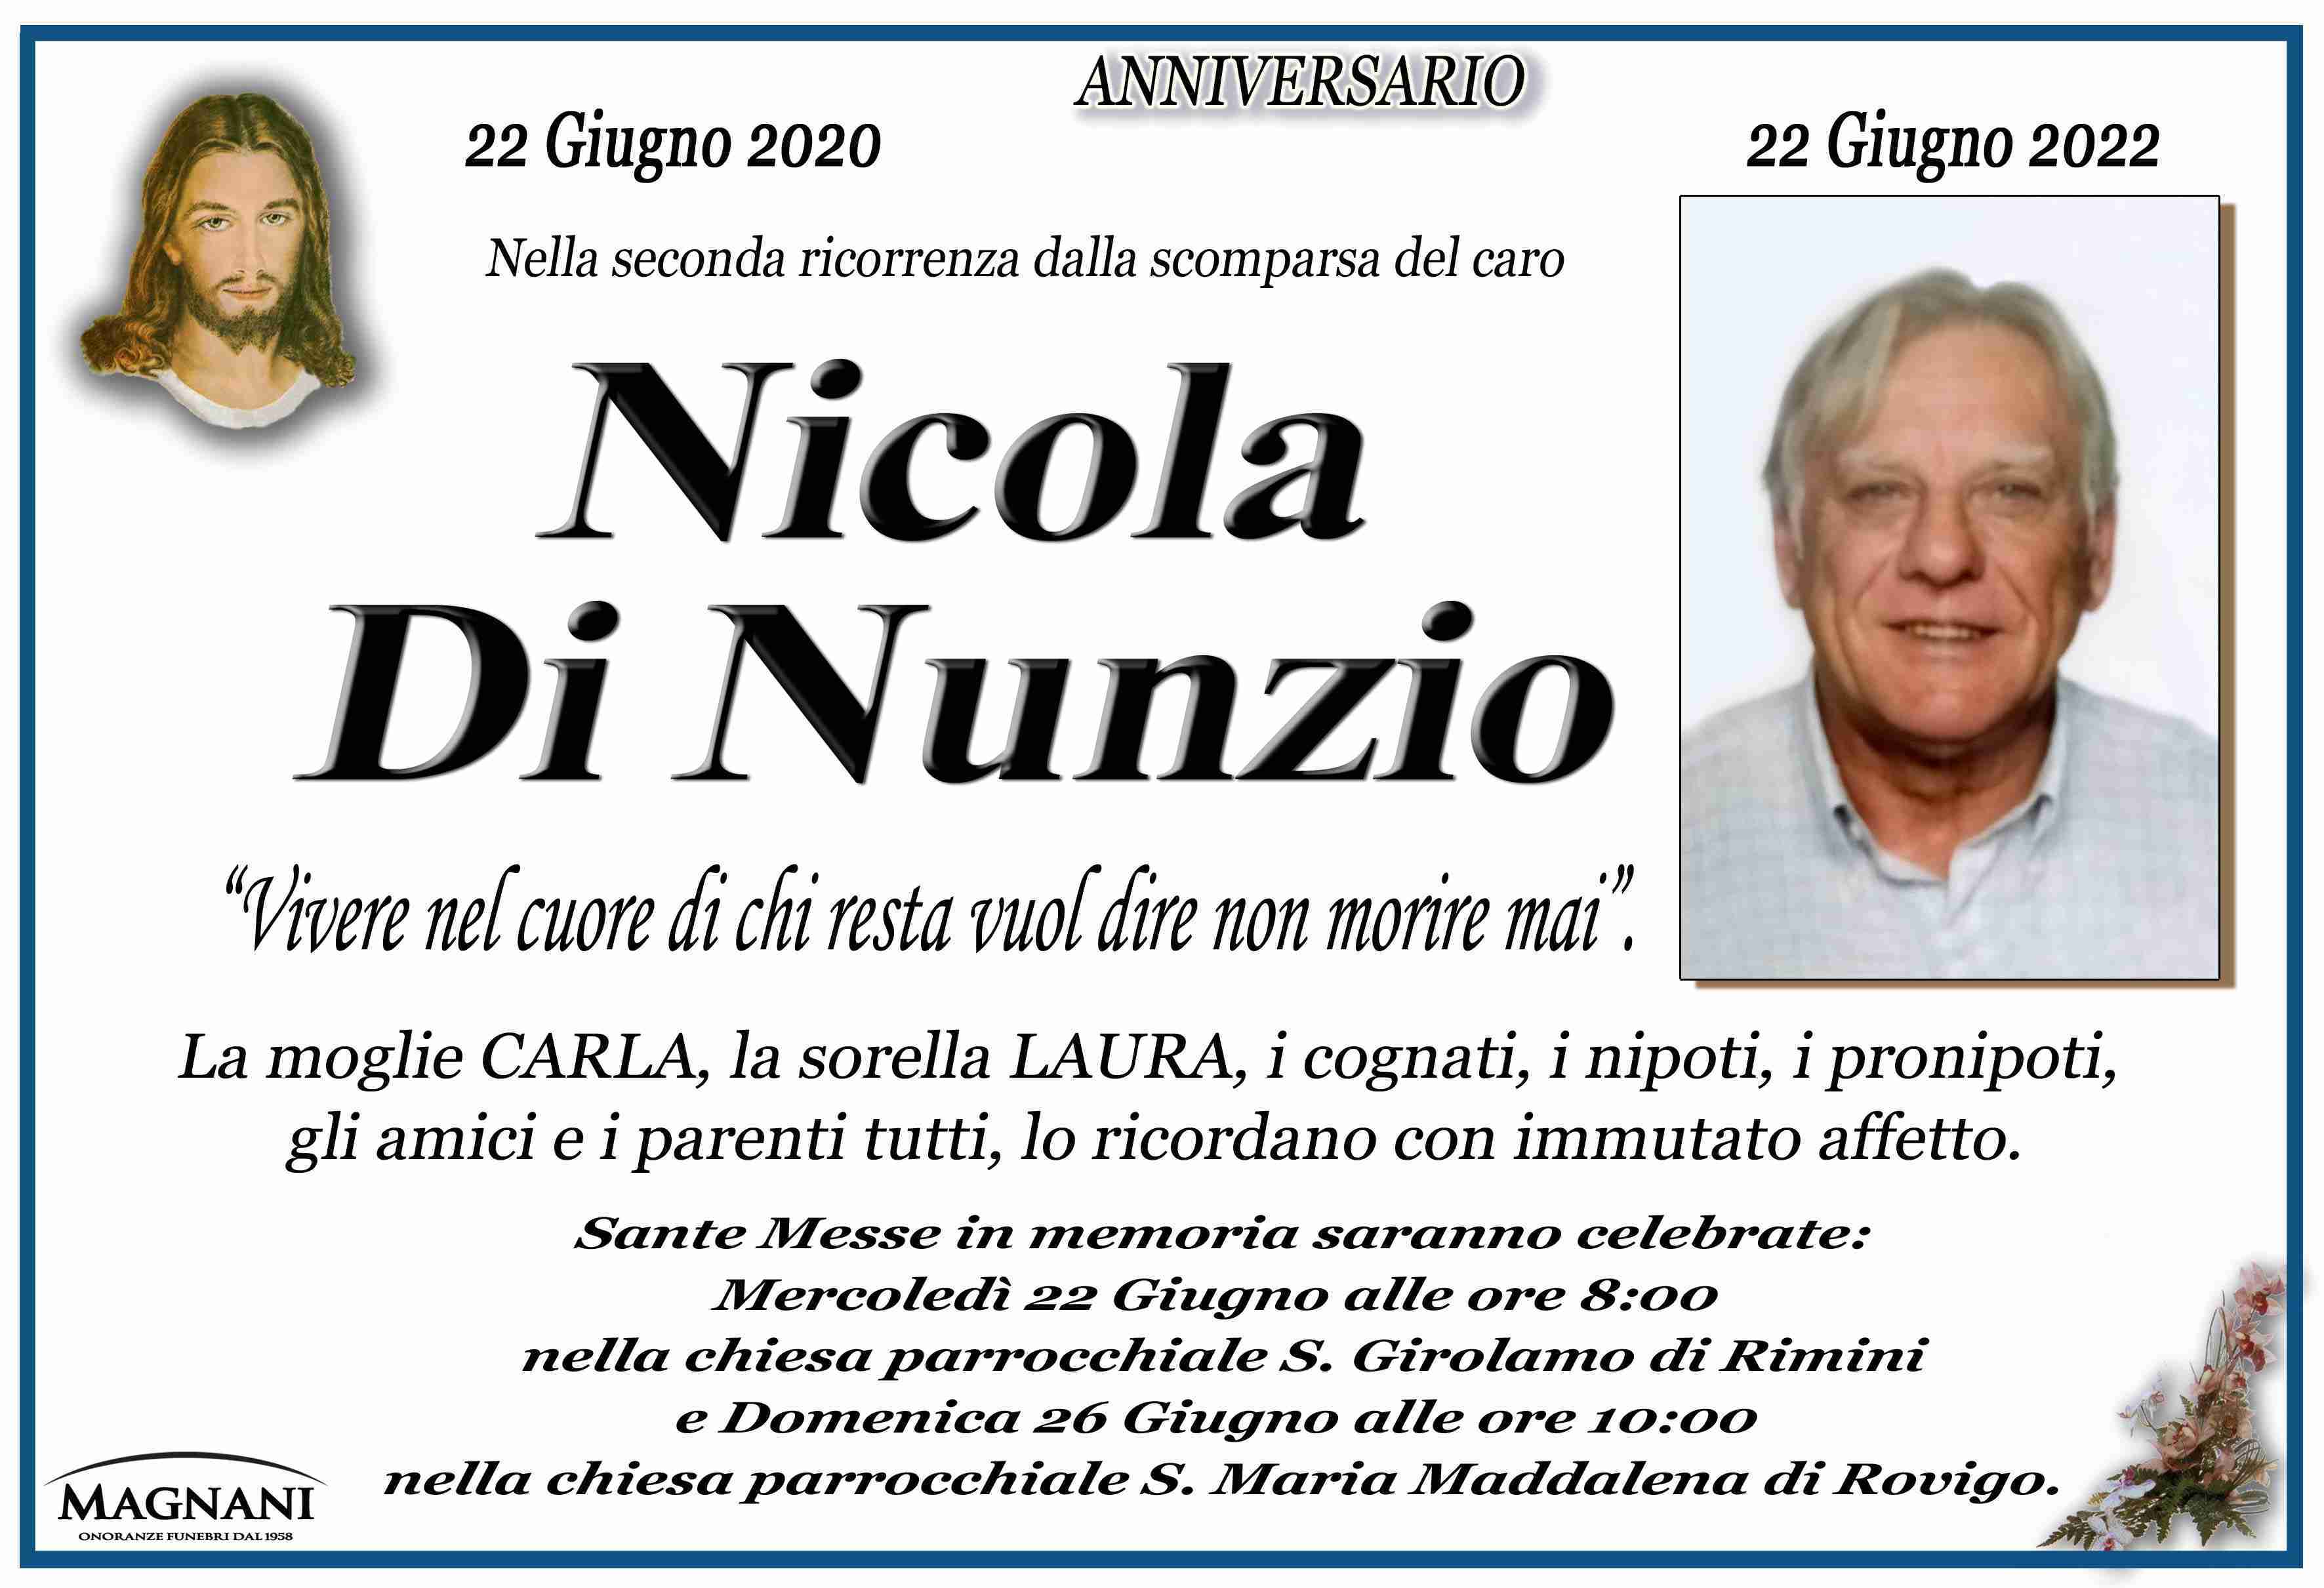 Nicola Di Nunzio